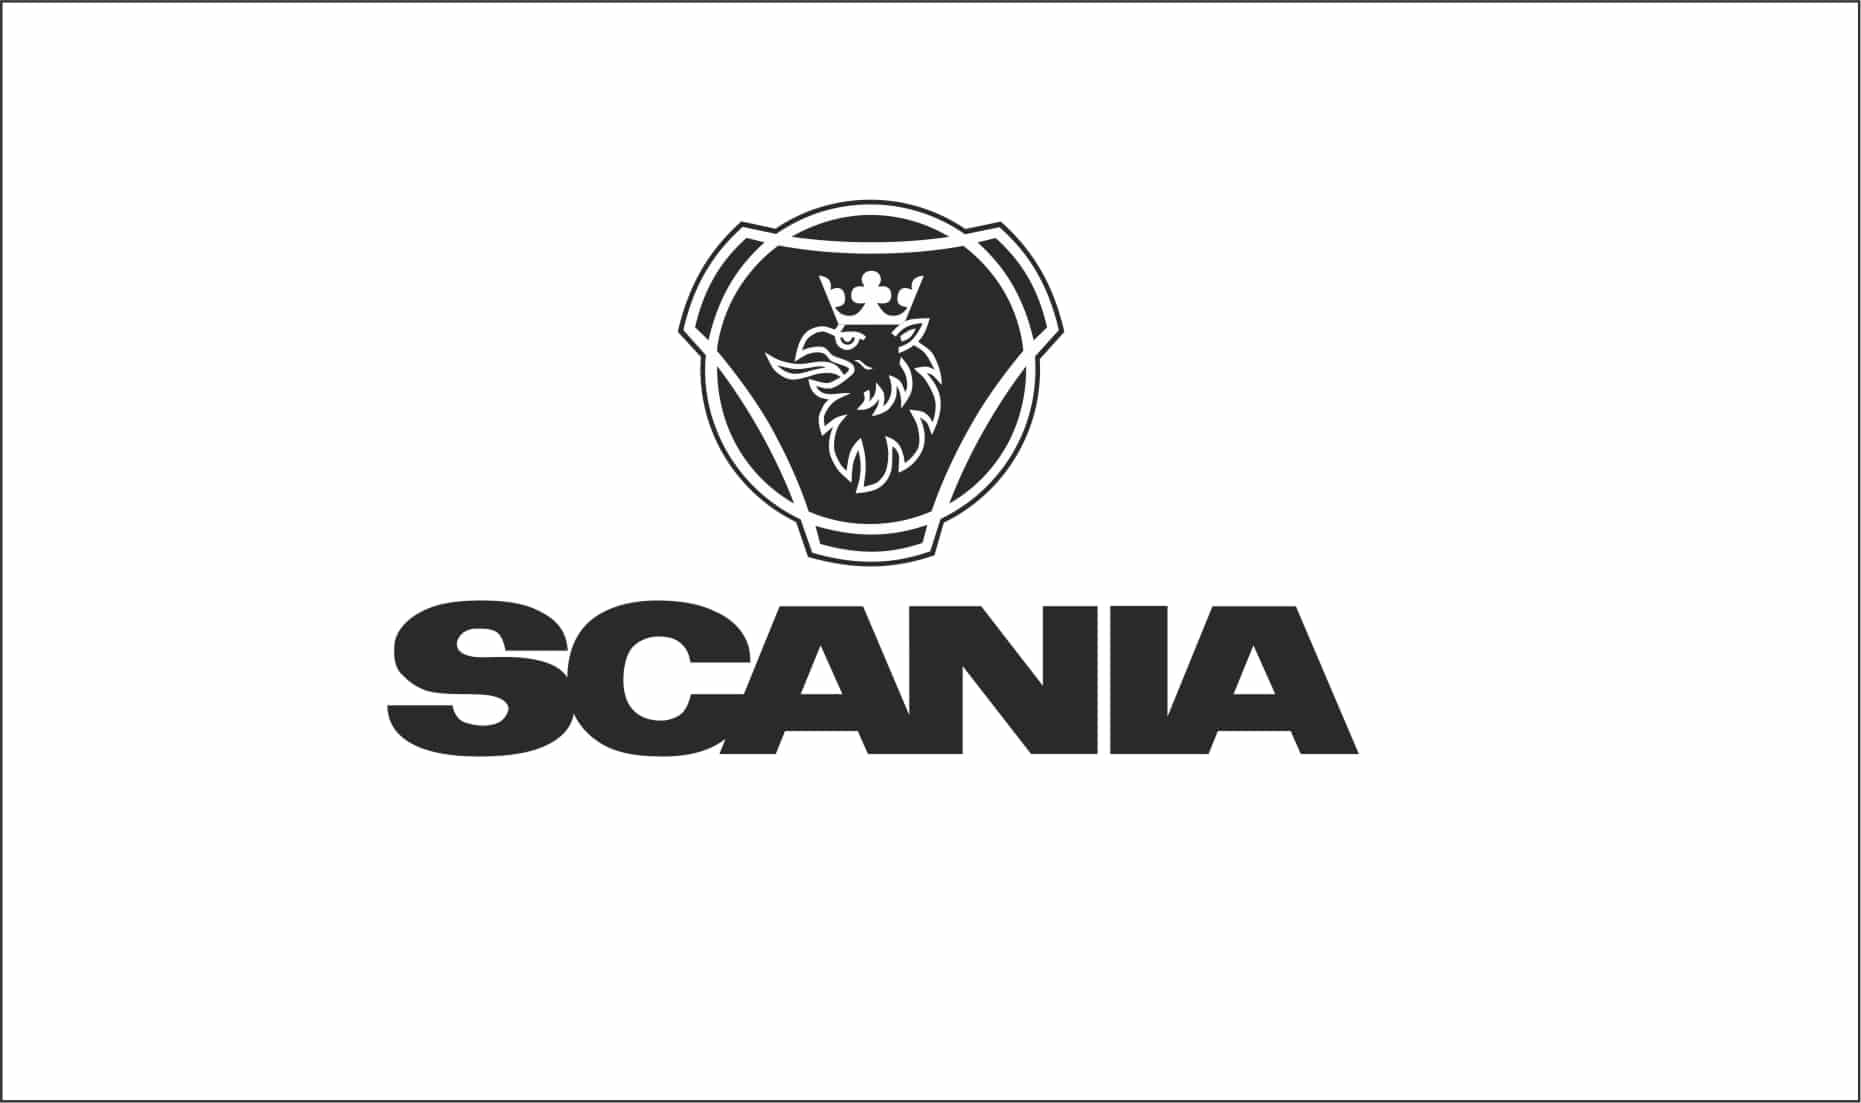 Scania Logo - Scania Logo graphic sticker made from quality vinyl